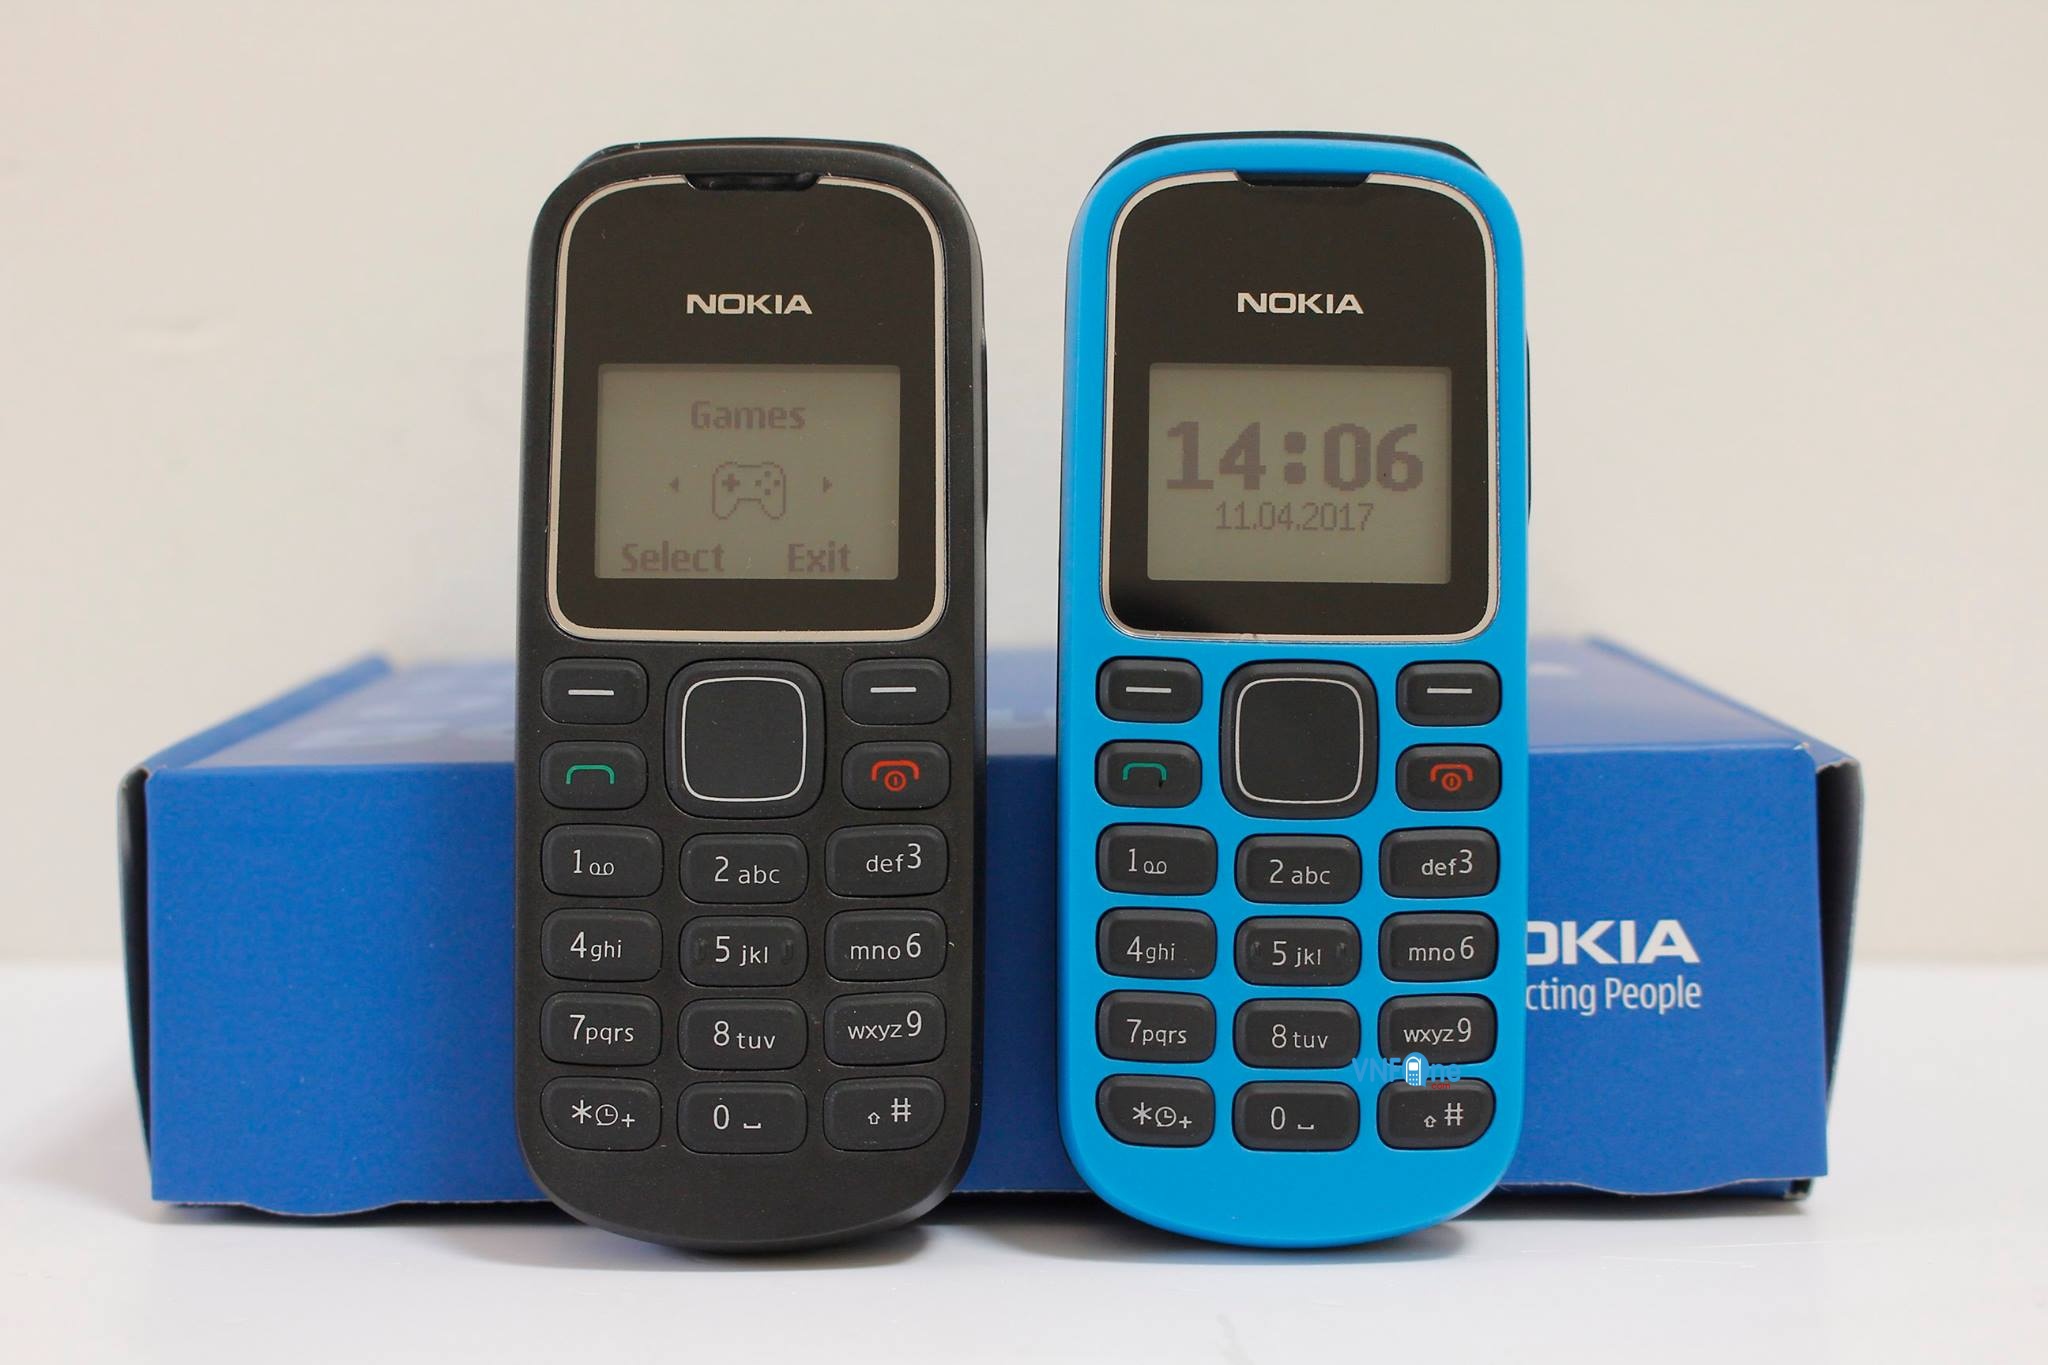 Điện Thoại Nokia 1280: Nokia 1280 là sản phẩm điện thoại đơn giản nhưng vô cùng đáng yêu và tiện dụng! Với thiết kế nhỏ gọn và pin trâu, bạn có thể sử dụng nó trong thời gian dài mà không cần lo sợ việc sạc hay hỏng hóc. Hãy xem hình ảnh Nokia 1280 để trải nghiệm sự đơn giản và tuyệt vời của chiếc điện thoại này!